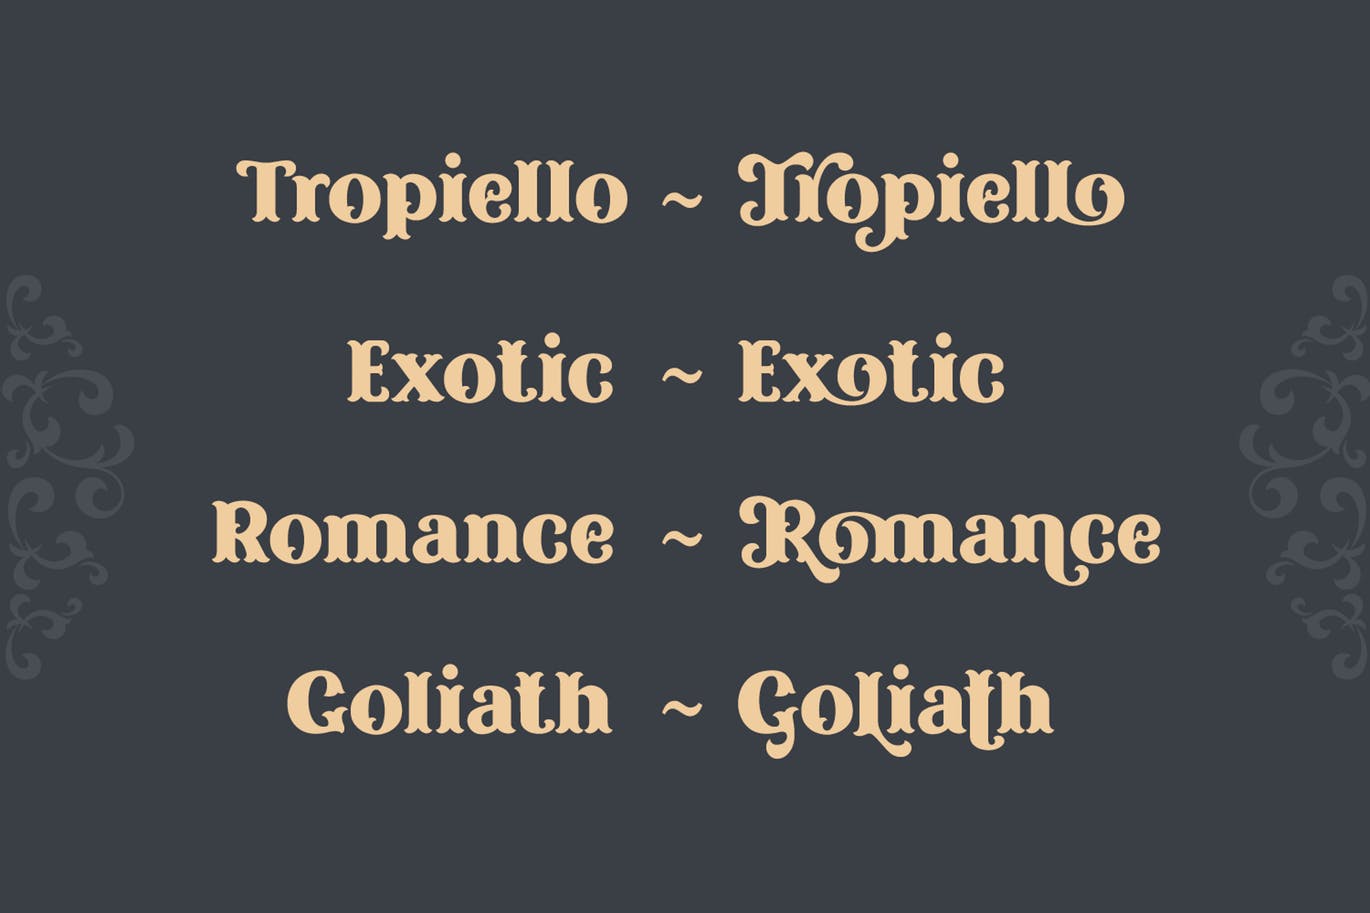 复古风格精美英文衬线装饰字体蚂蚁素材精选下载 Tropiello Font插图(4)